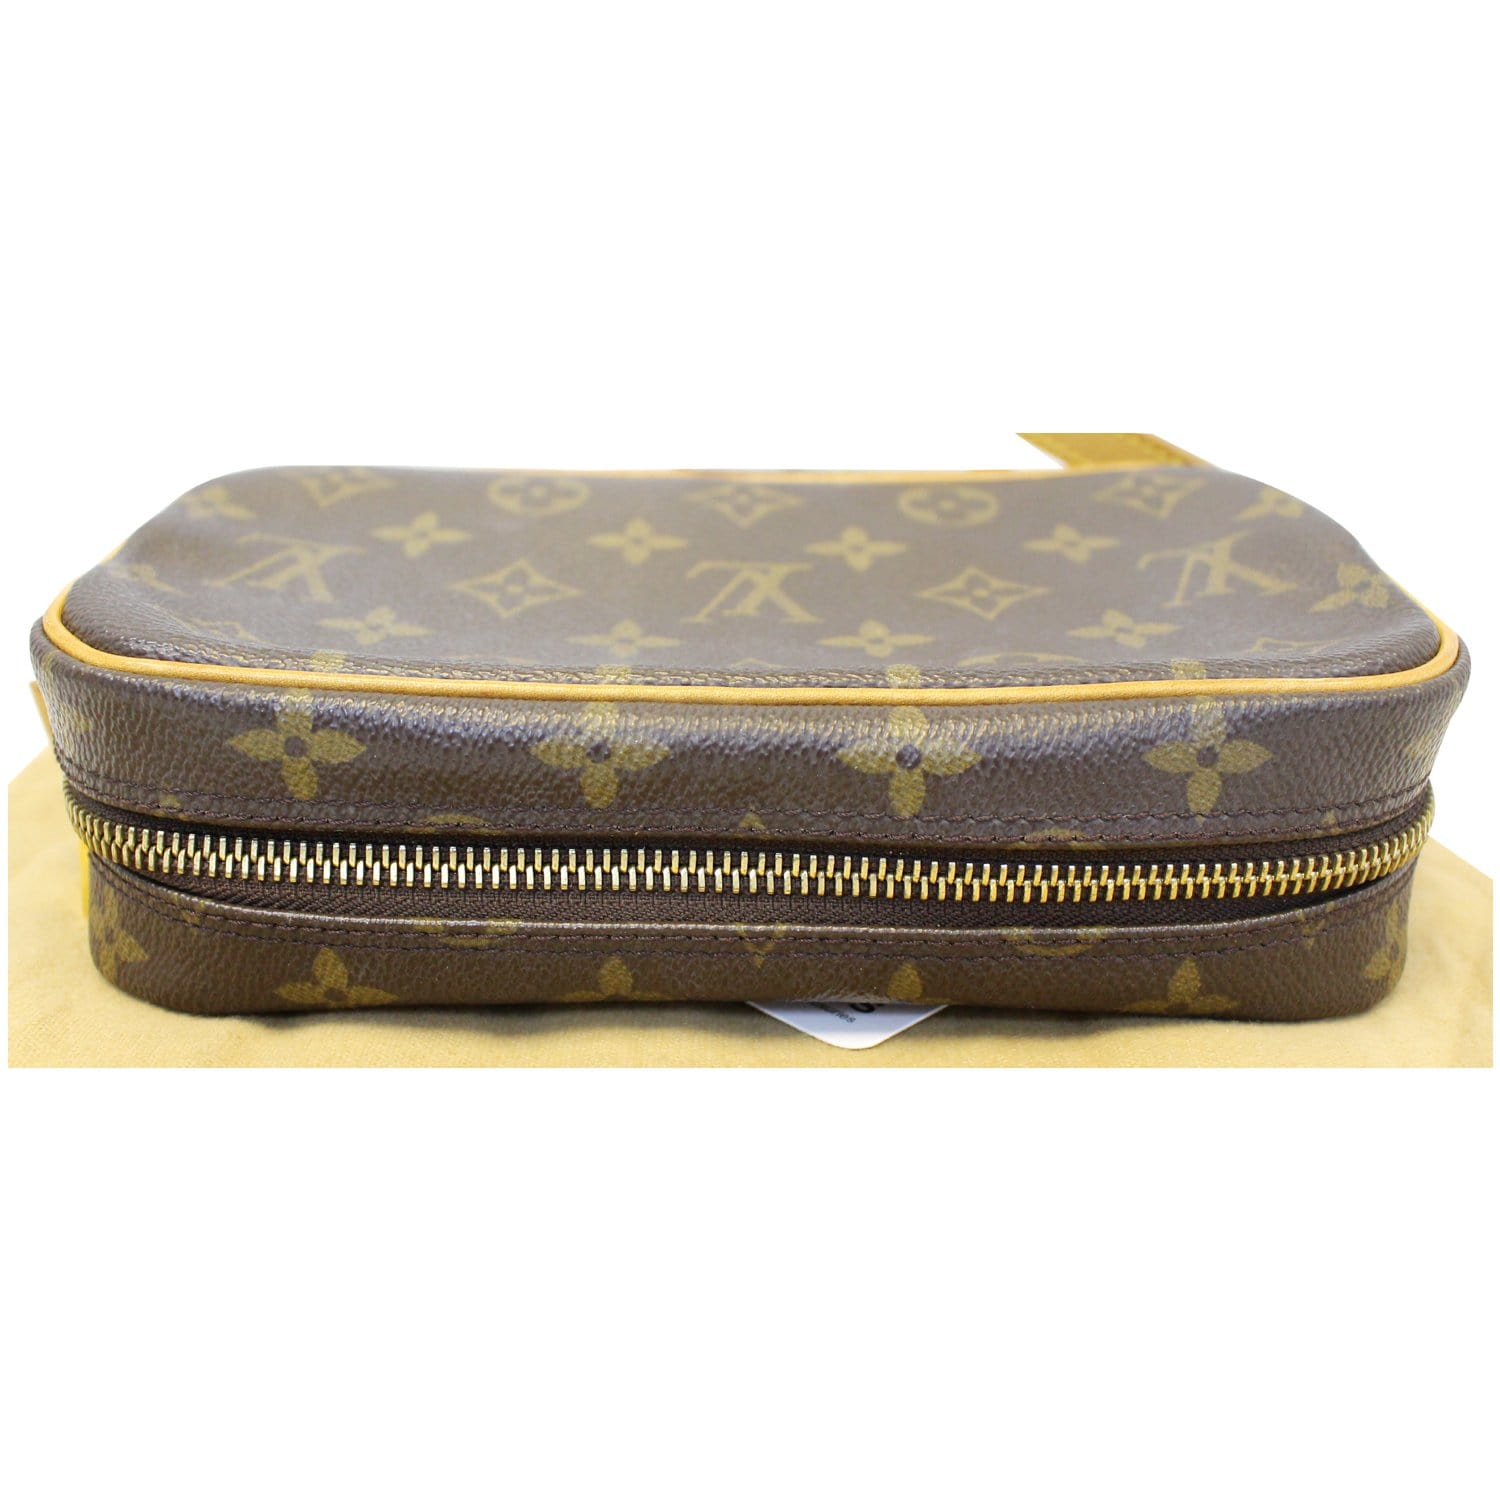 ❌ SOLD ❌Louis Vuitton Pochette Cite Shoulder Bag • $575 as is